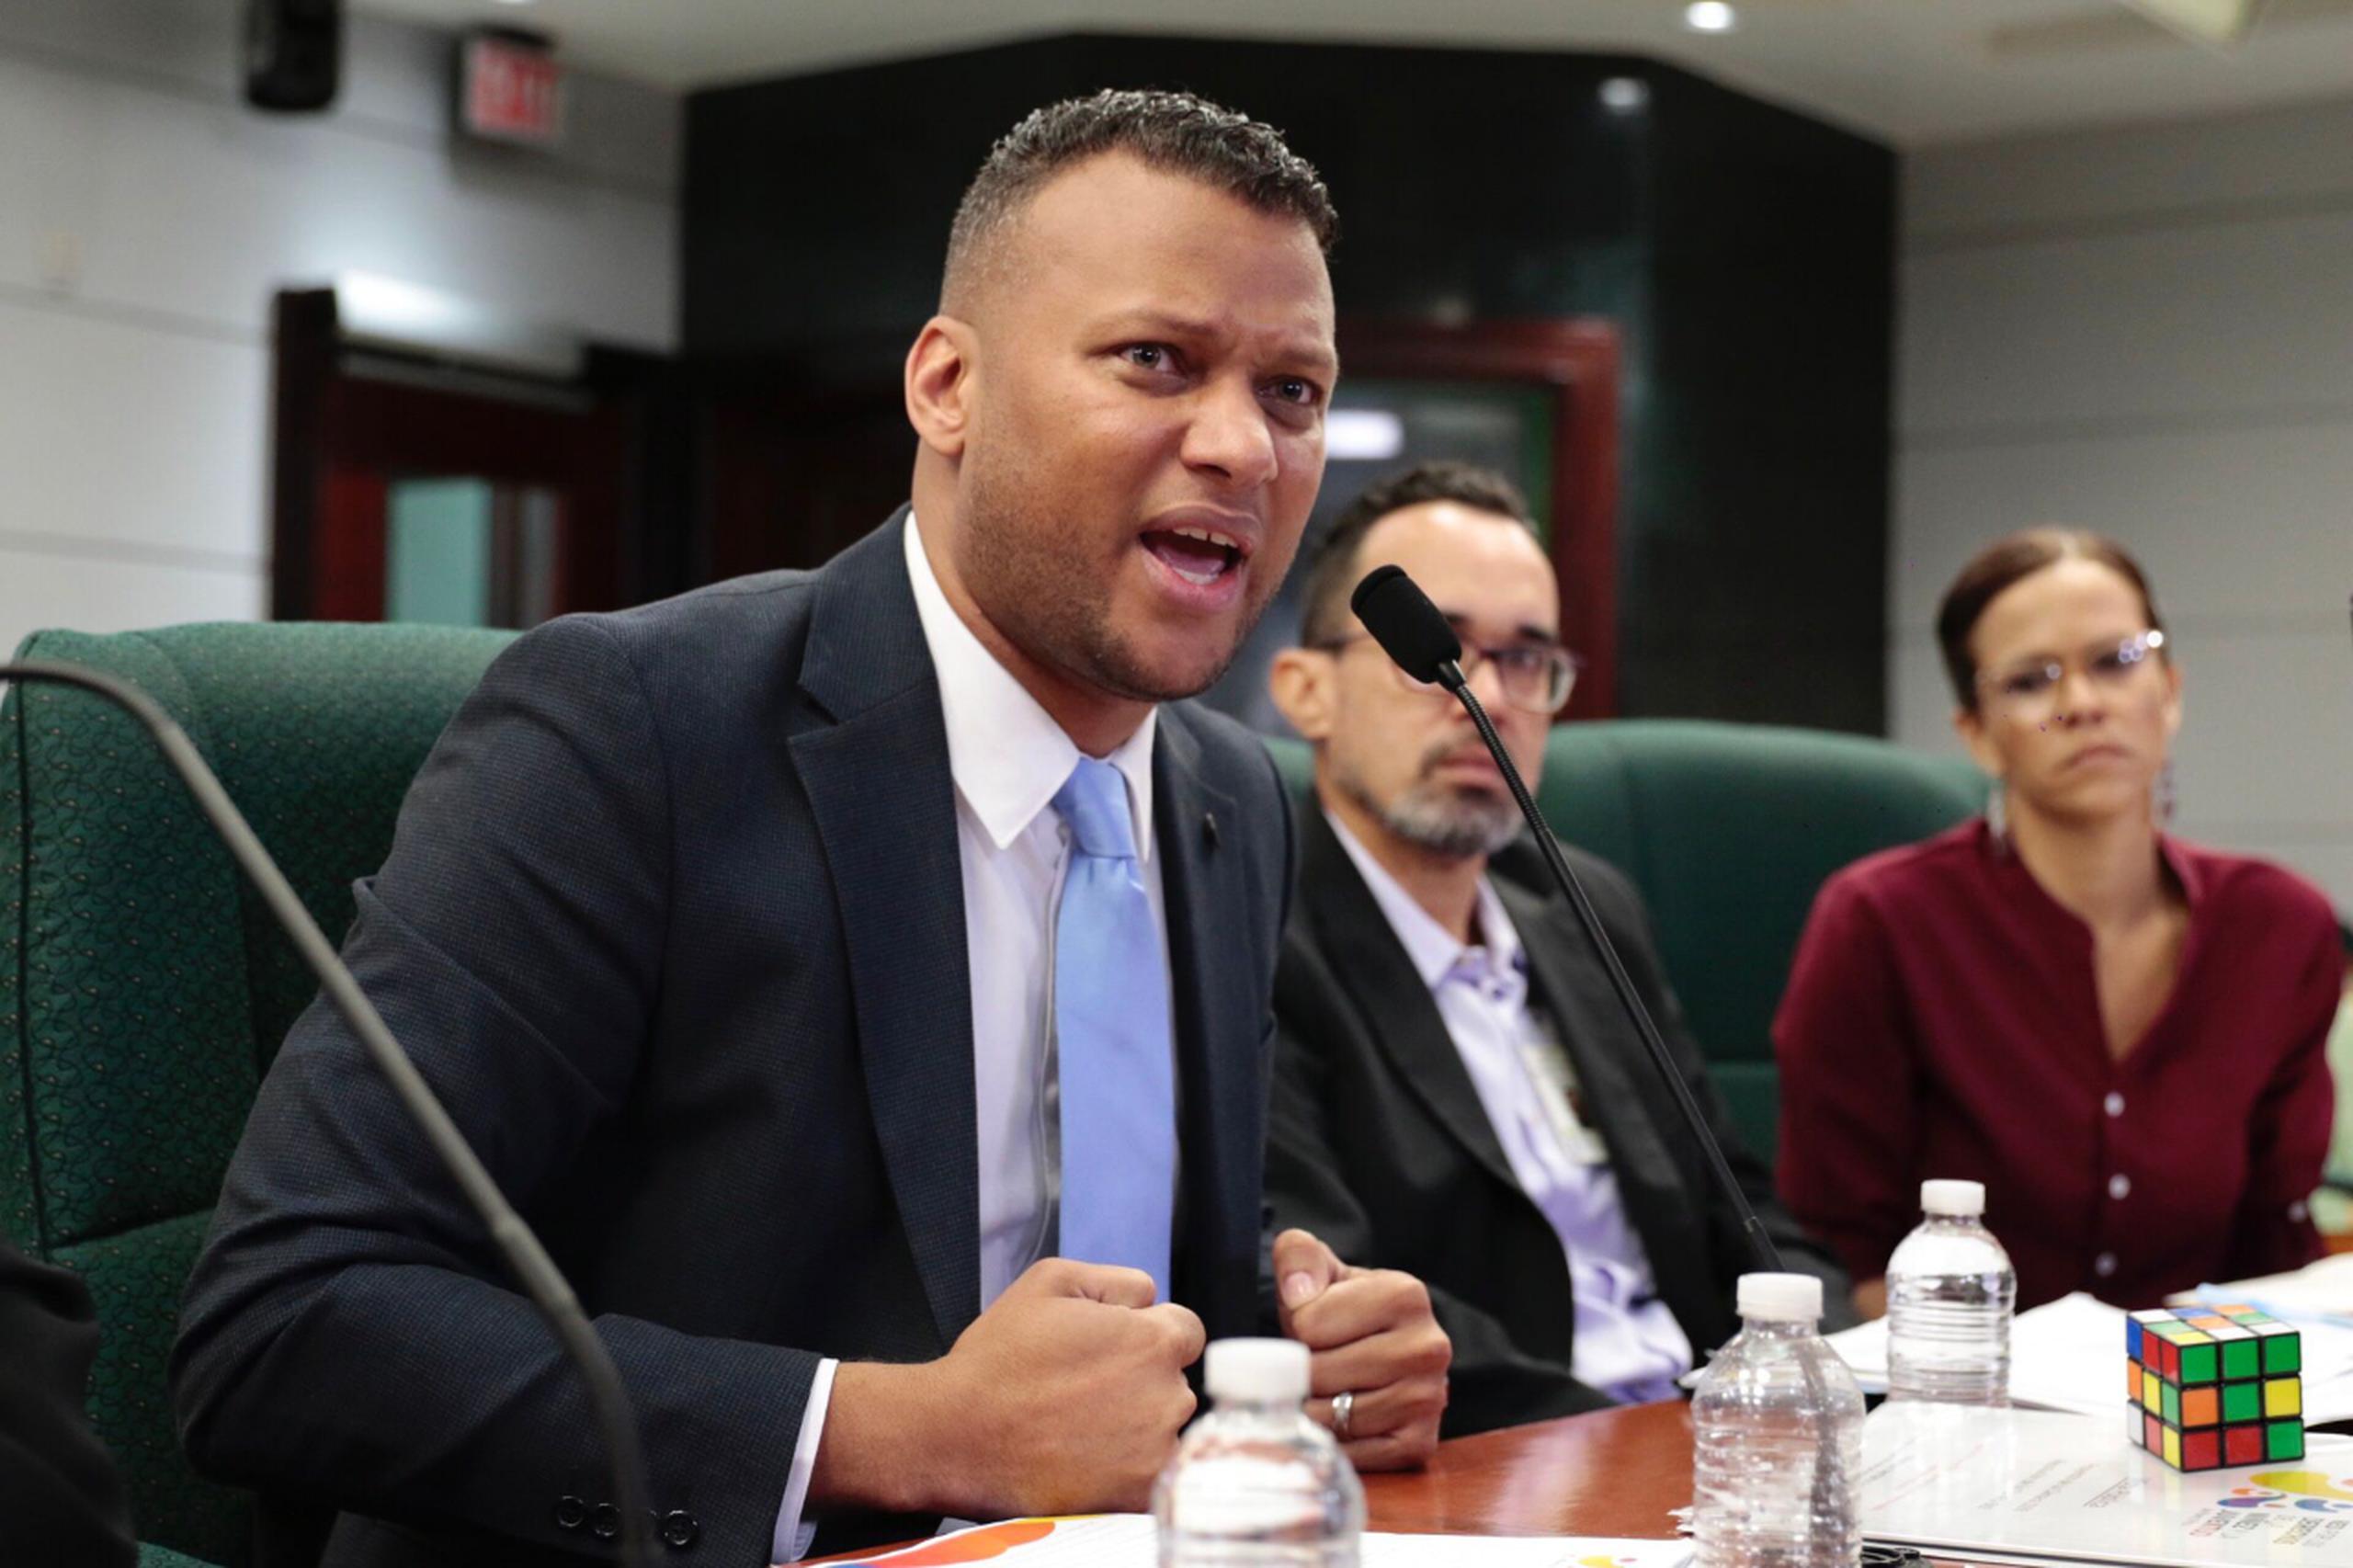 El presidente de la Red por los Derechos de la Niñez y la Juventud, Marcos Santana Andújar destacó en una vista pública de la Cámara de Representantes que el maltrato infantil es un problema de derechos humanos que limita el potencial y plenitud de miles de niños, niñas y jóvenes en Puerto Rico.